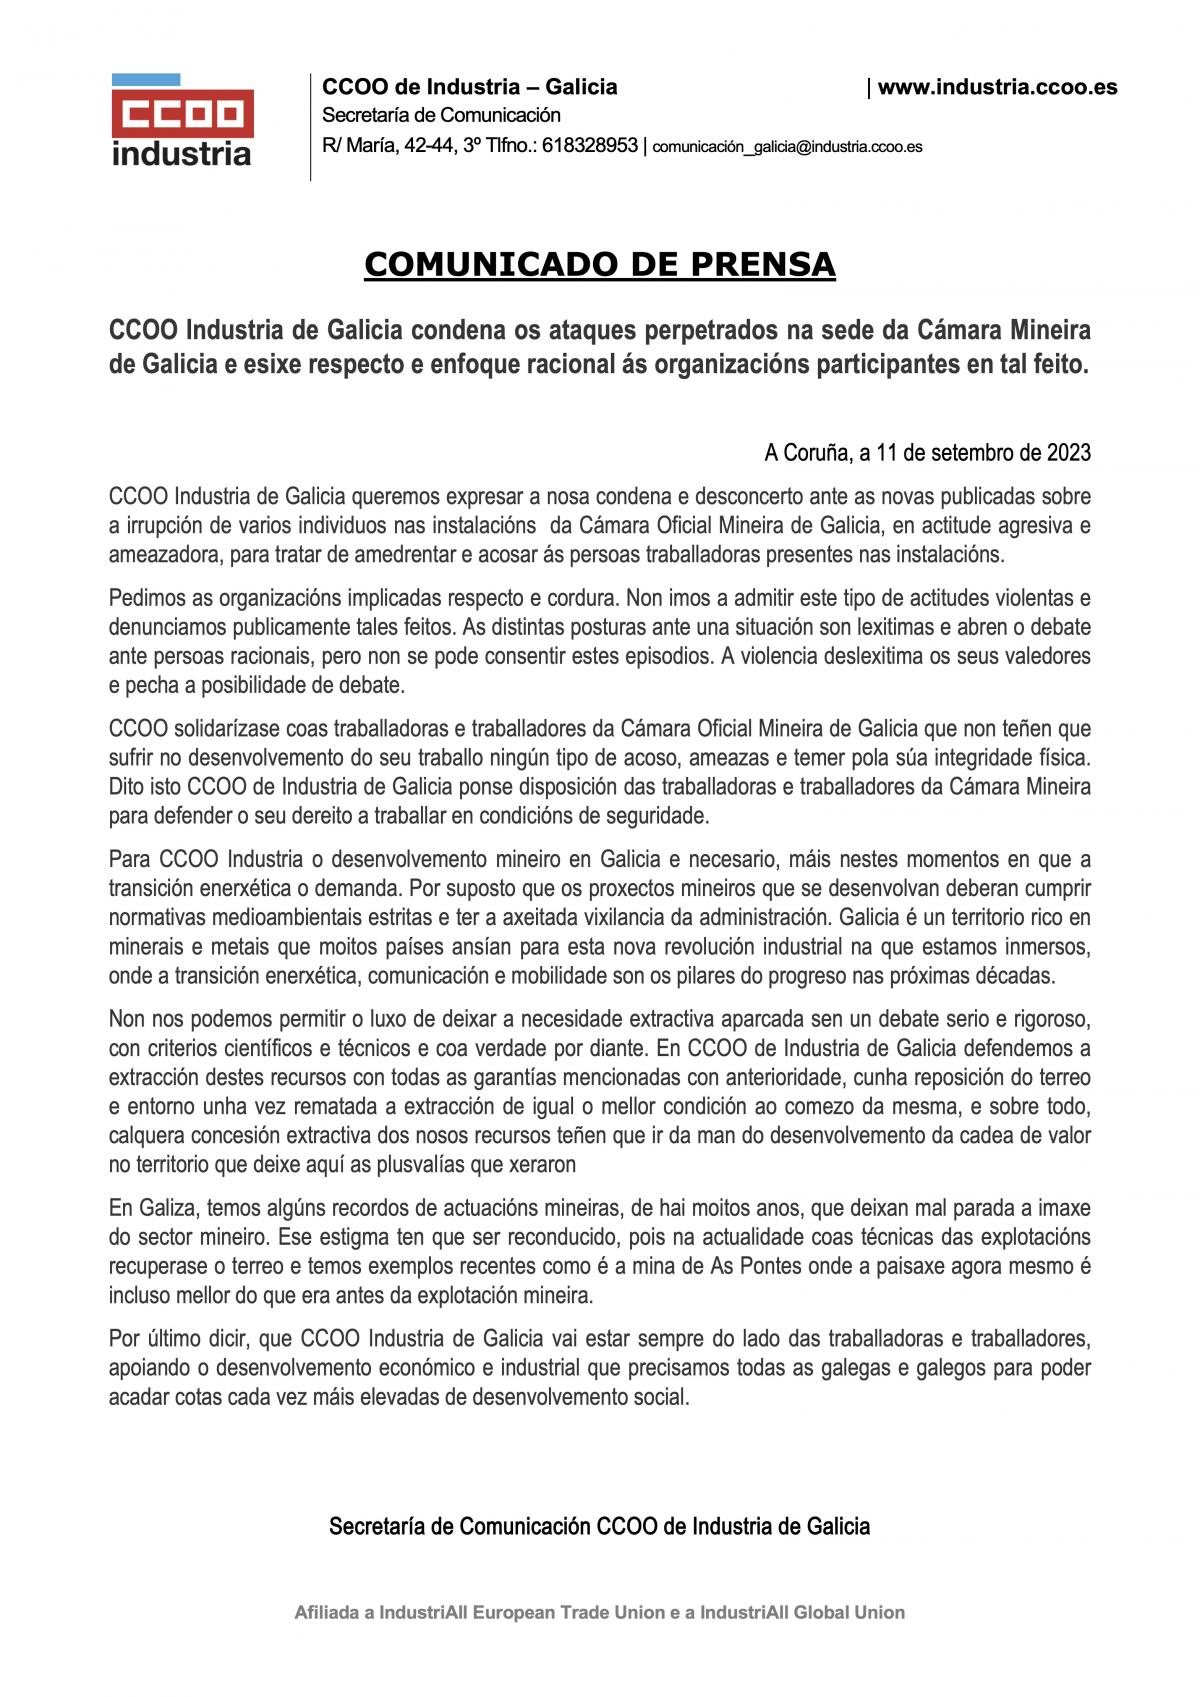 NdP CCOO Industria Galicia Altercados Cámara Mineira